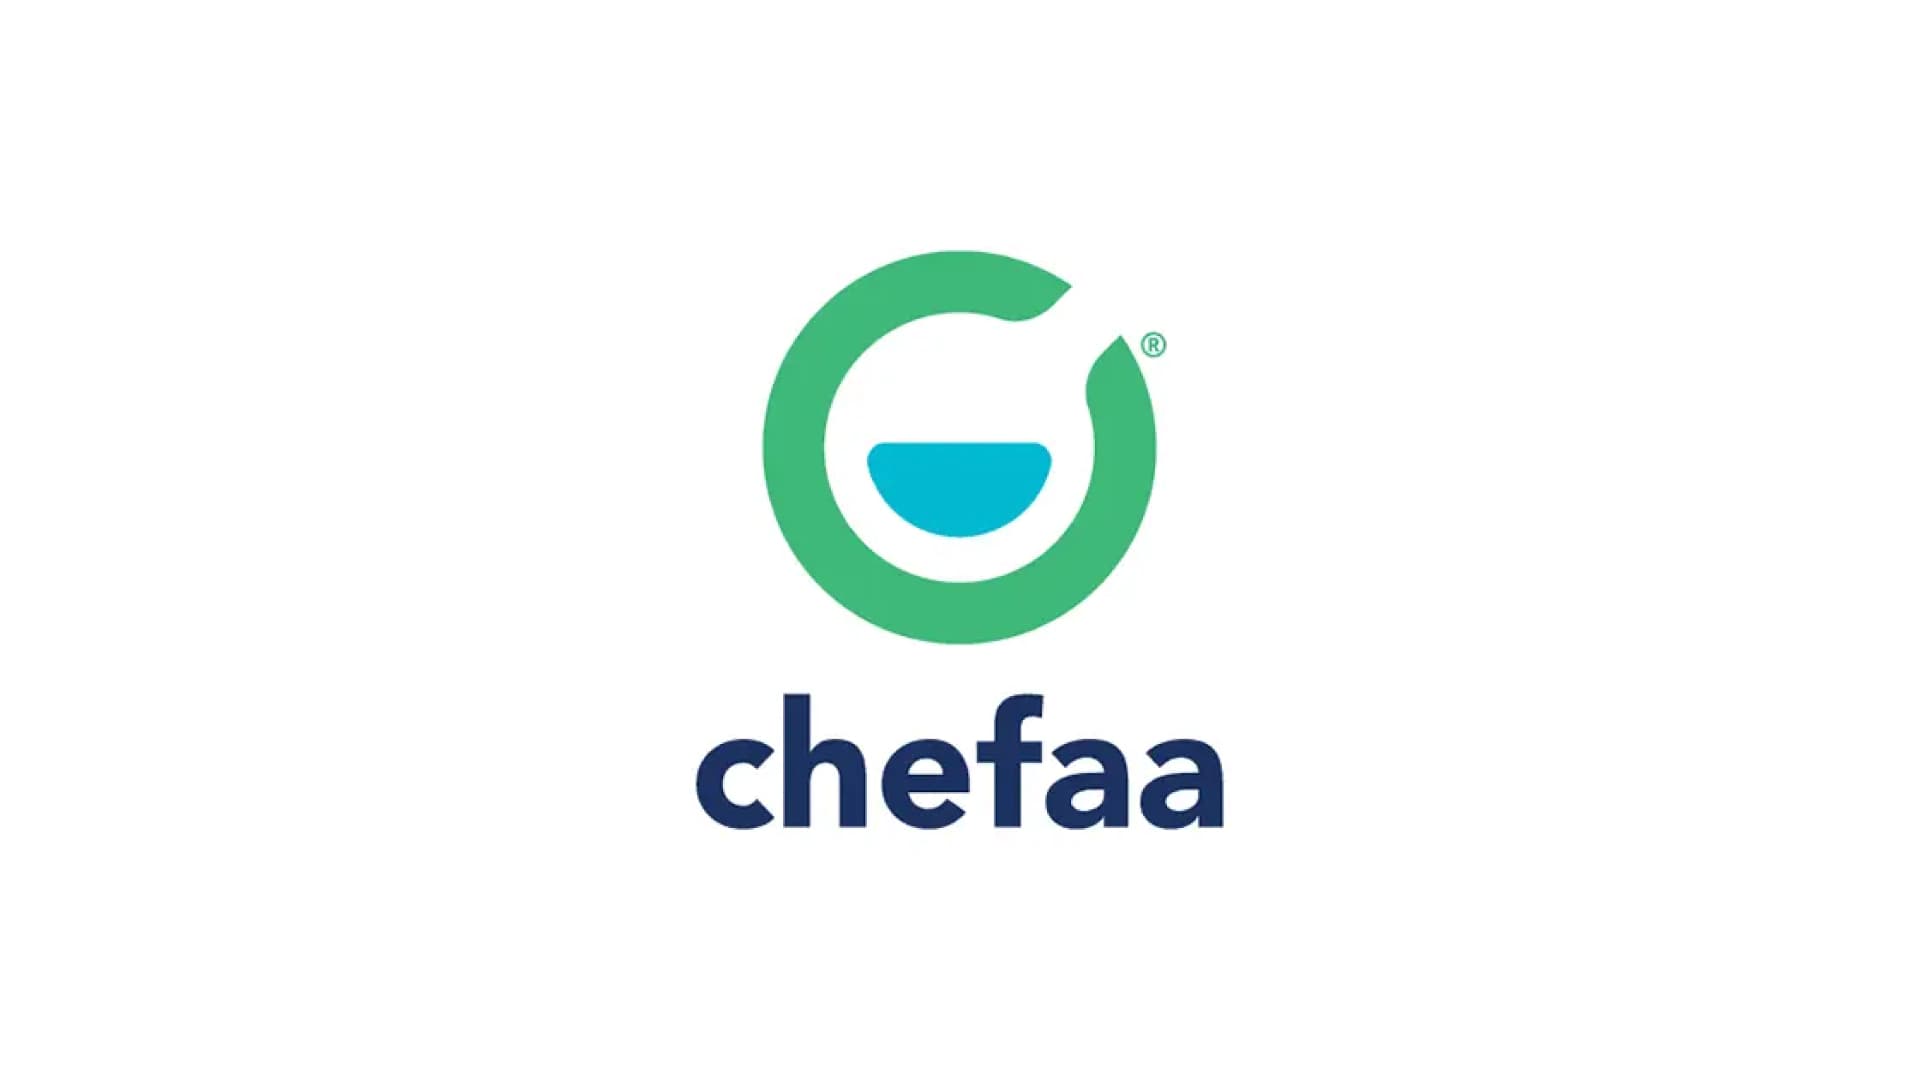 エジプトでデジタル薬局を主軸とした包括的な医療サービスプラットフォームを提供するChefaa Inc.、グローバル・ブレイン株式会社より資金調達